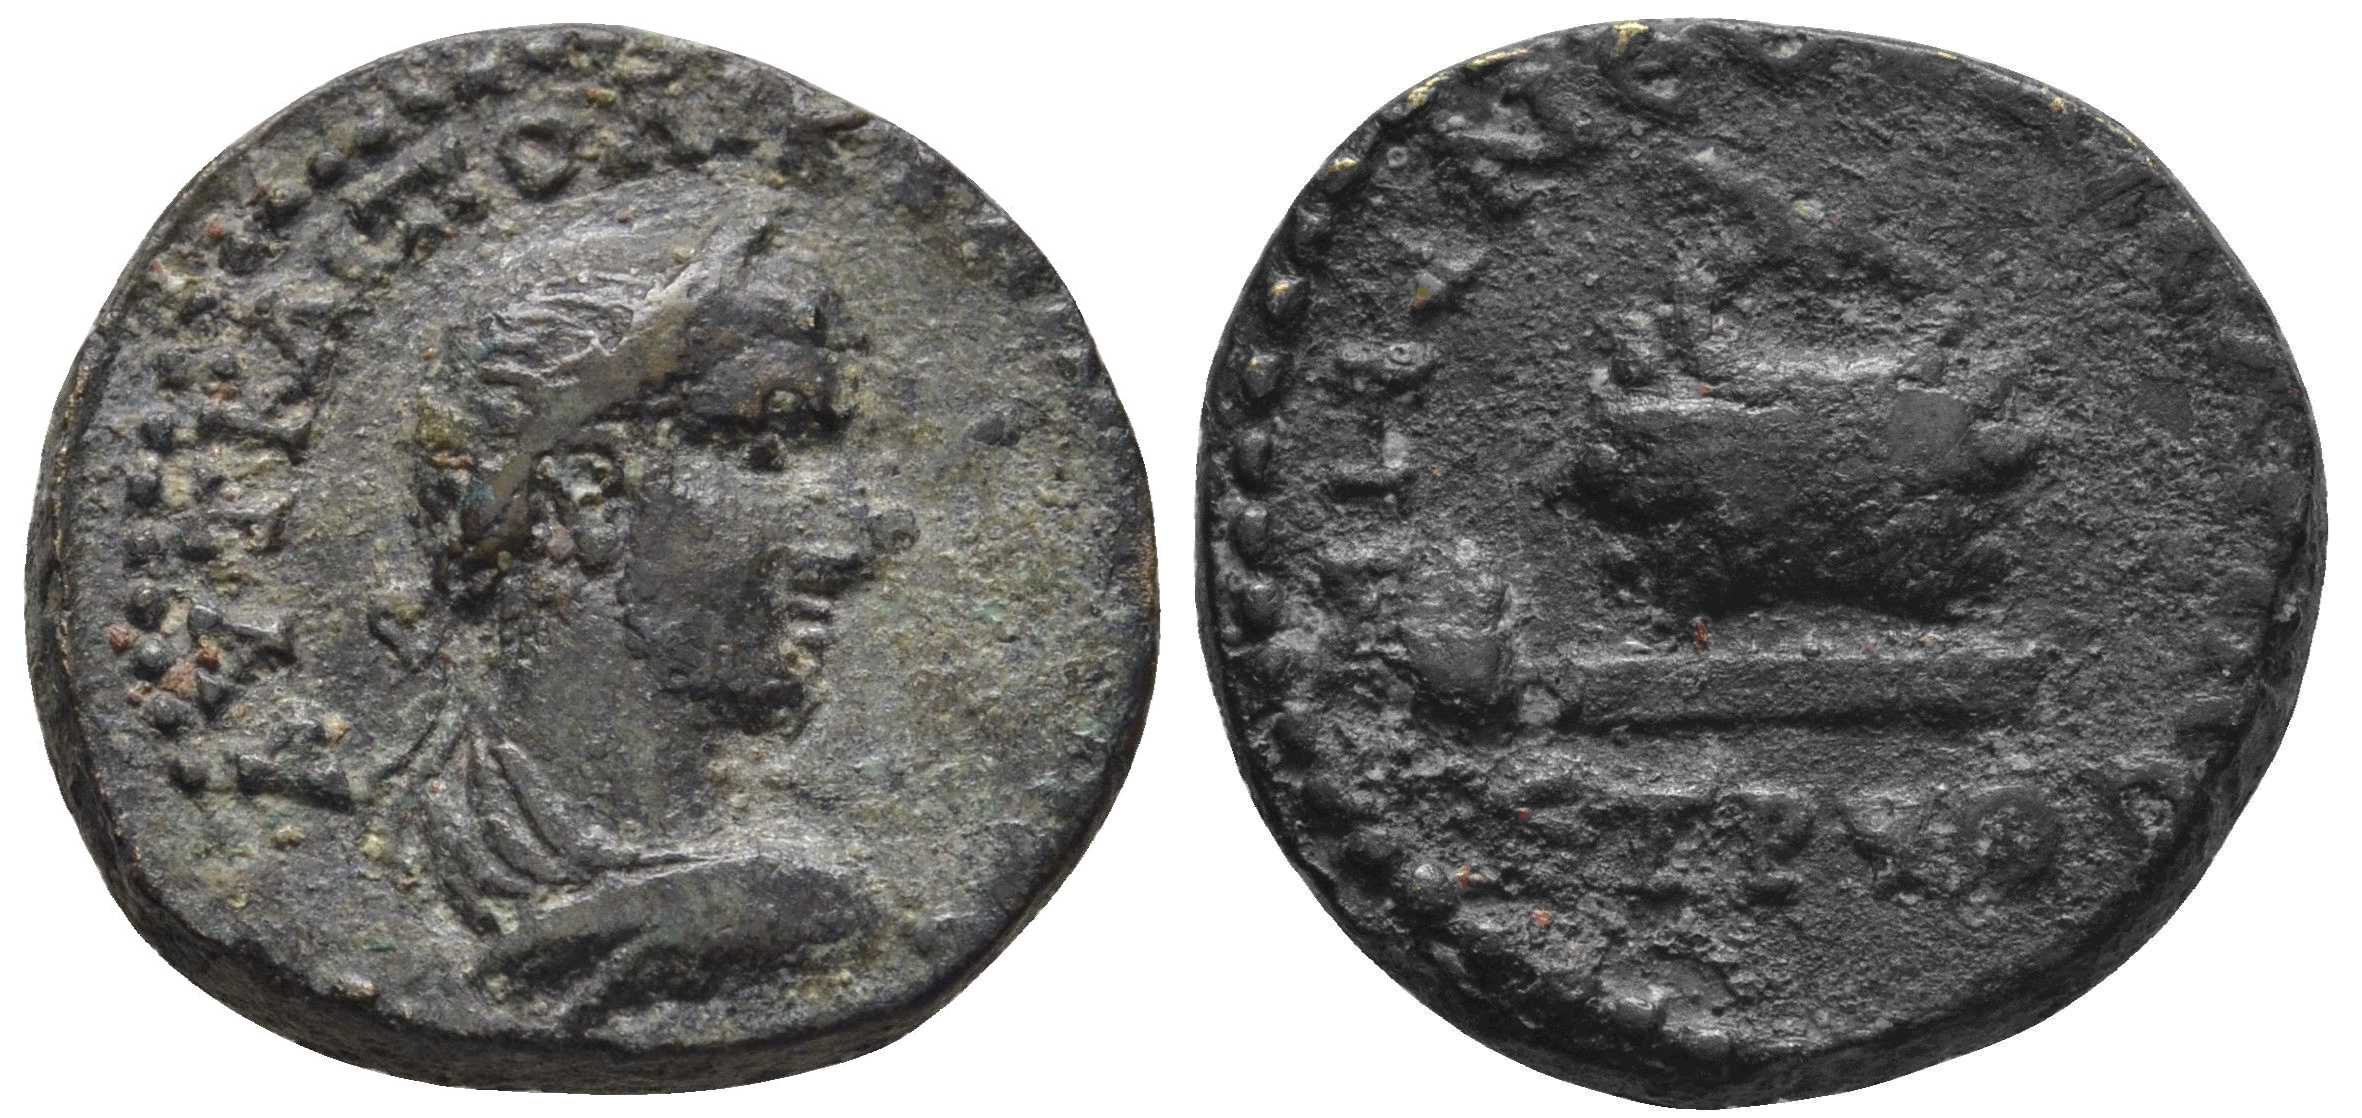 5884 Cabeira-Neocaesarea Pontus Gallienus AE